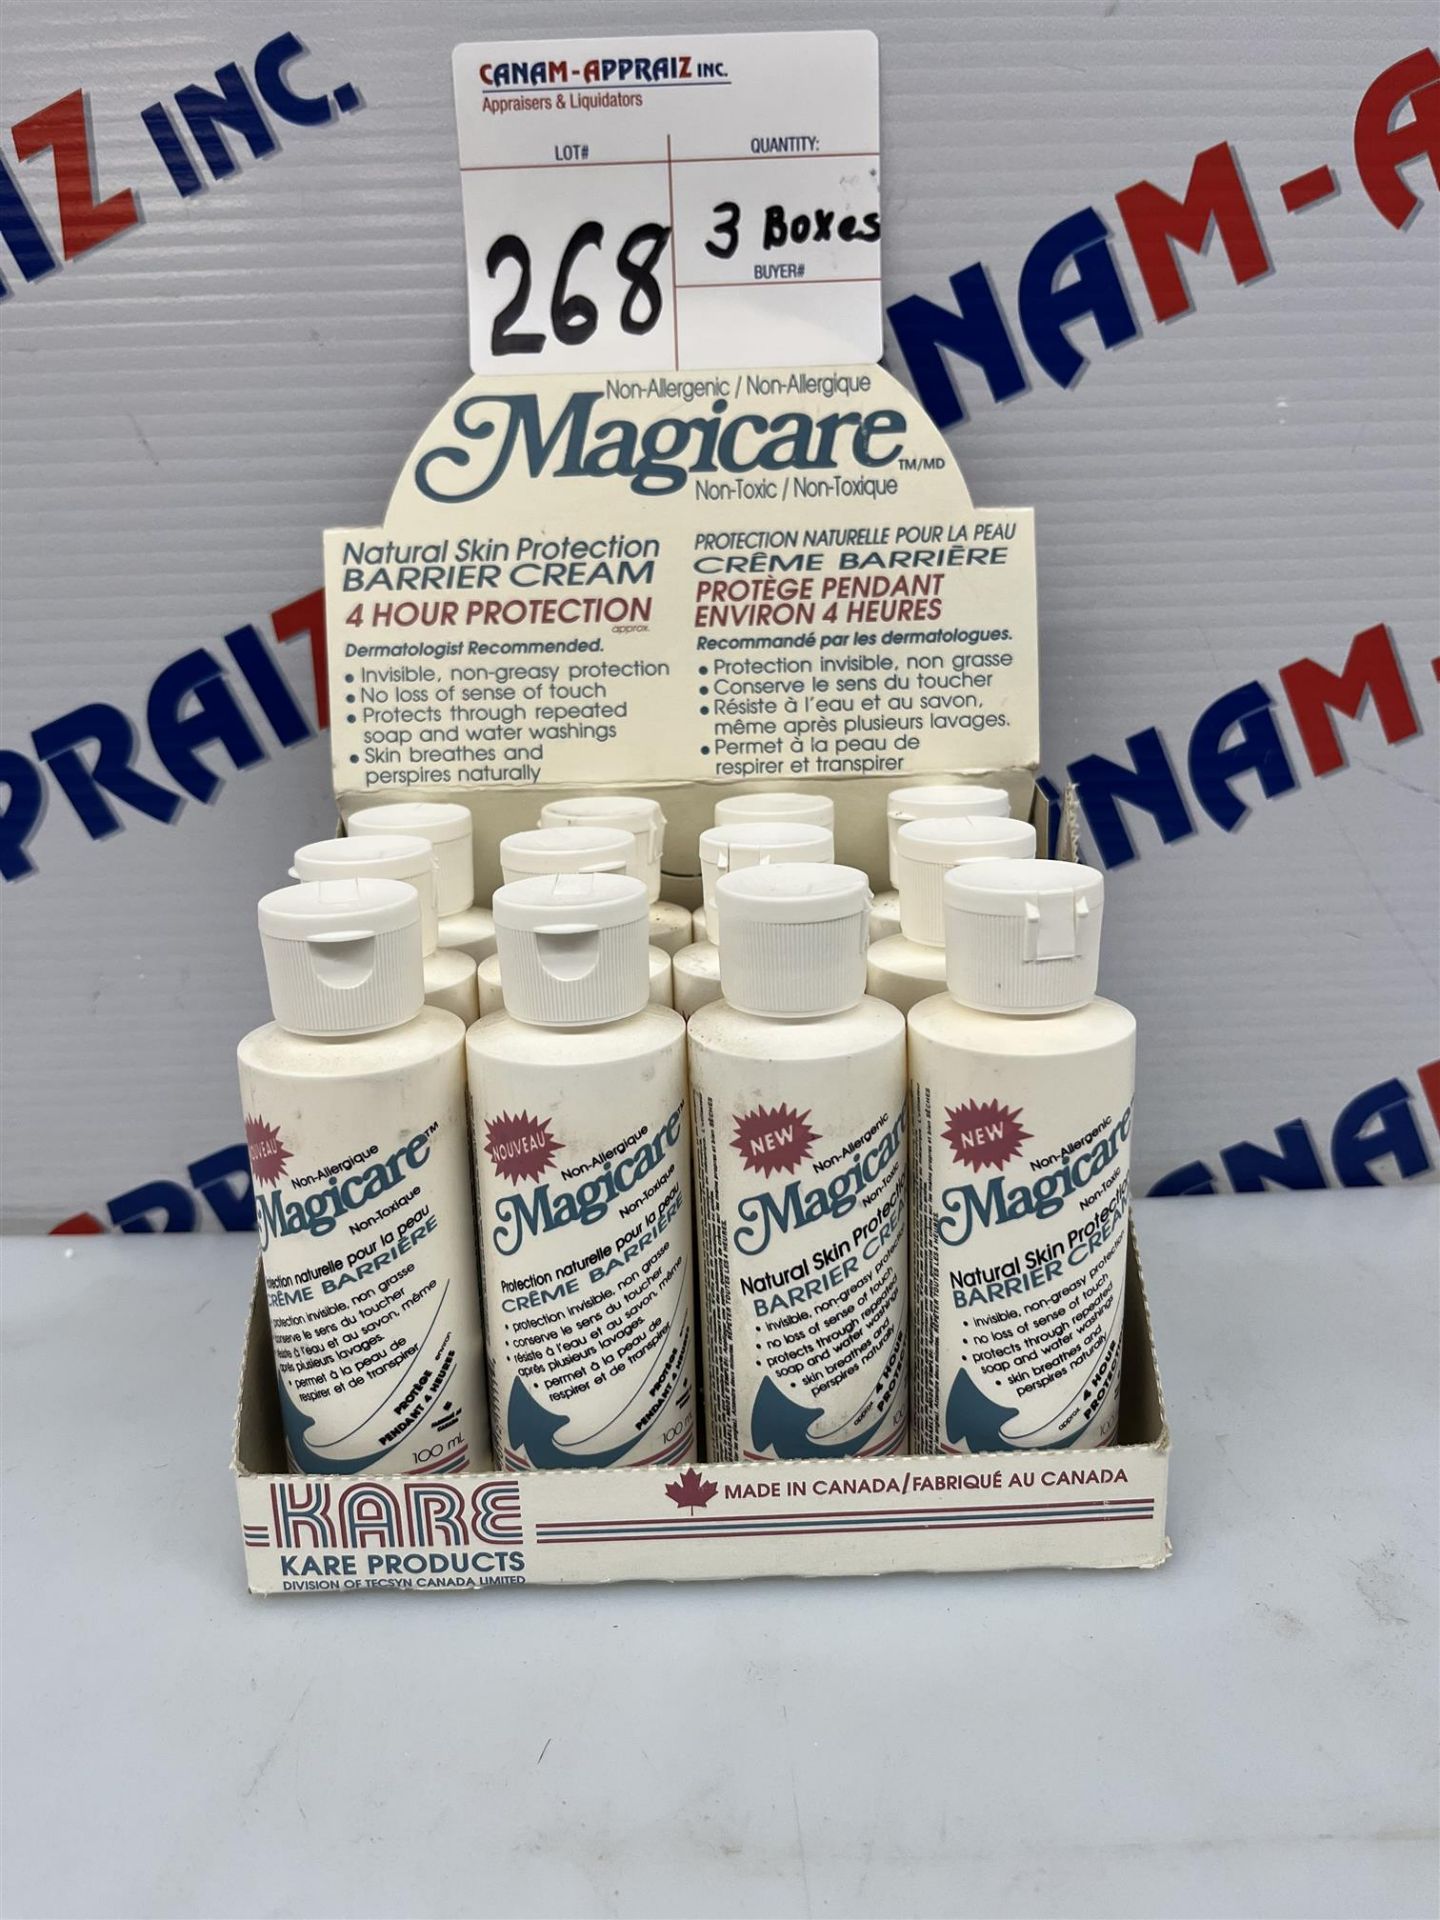 MAGICARE - Skin Cream - Quantity: x3 Boxes, 12 per box, 36 Total